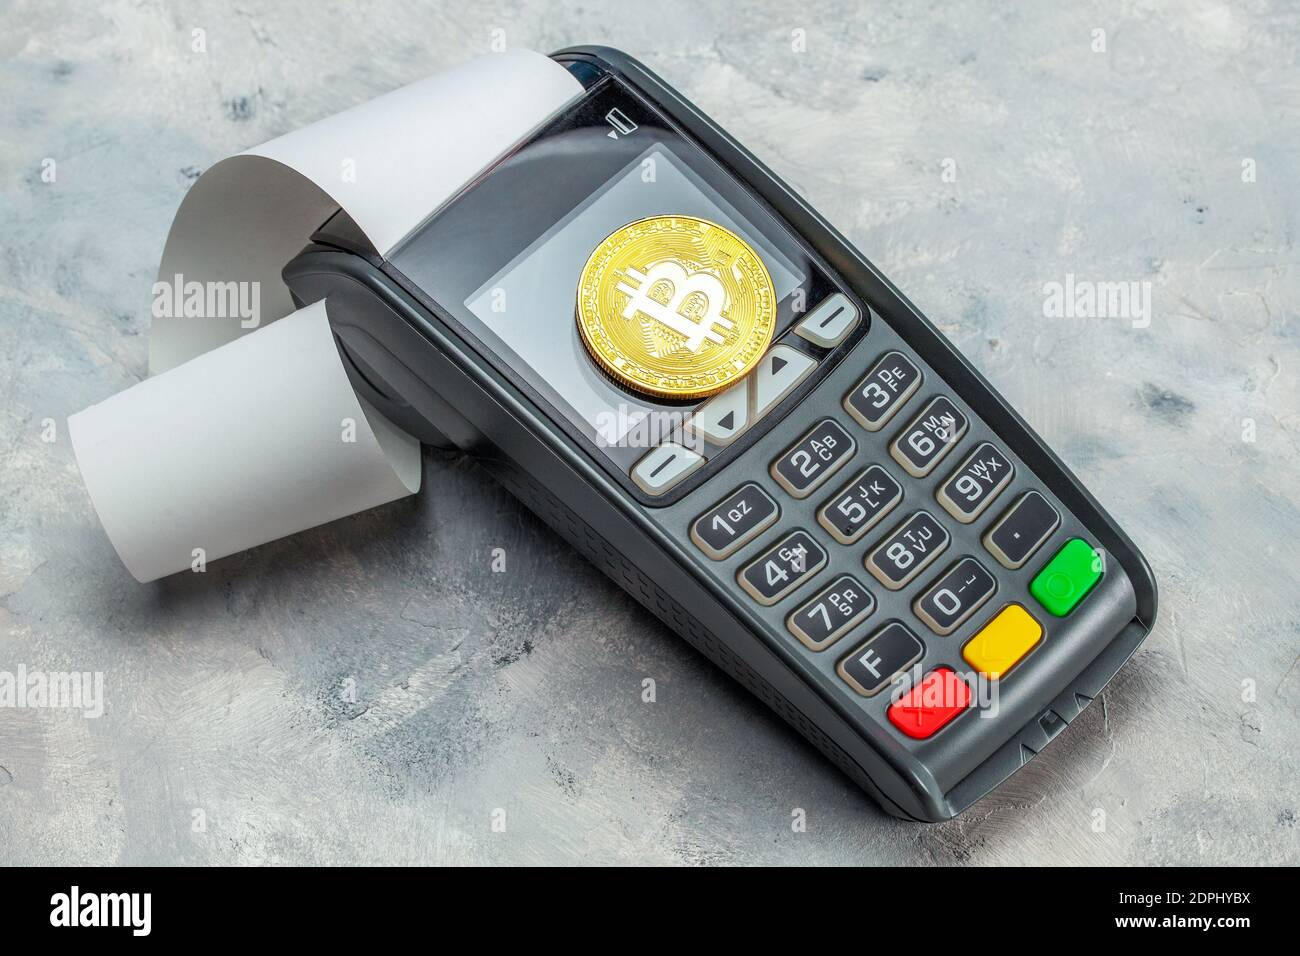 Bitcoin payment. Pos terminal and Bitcoin coin Stock Photo - Alamy